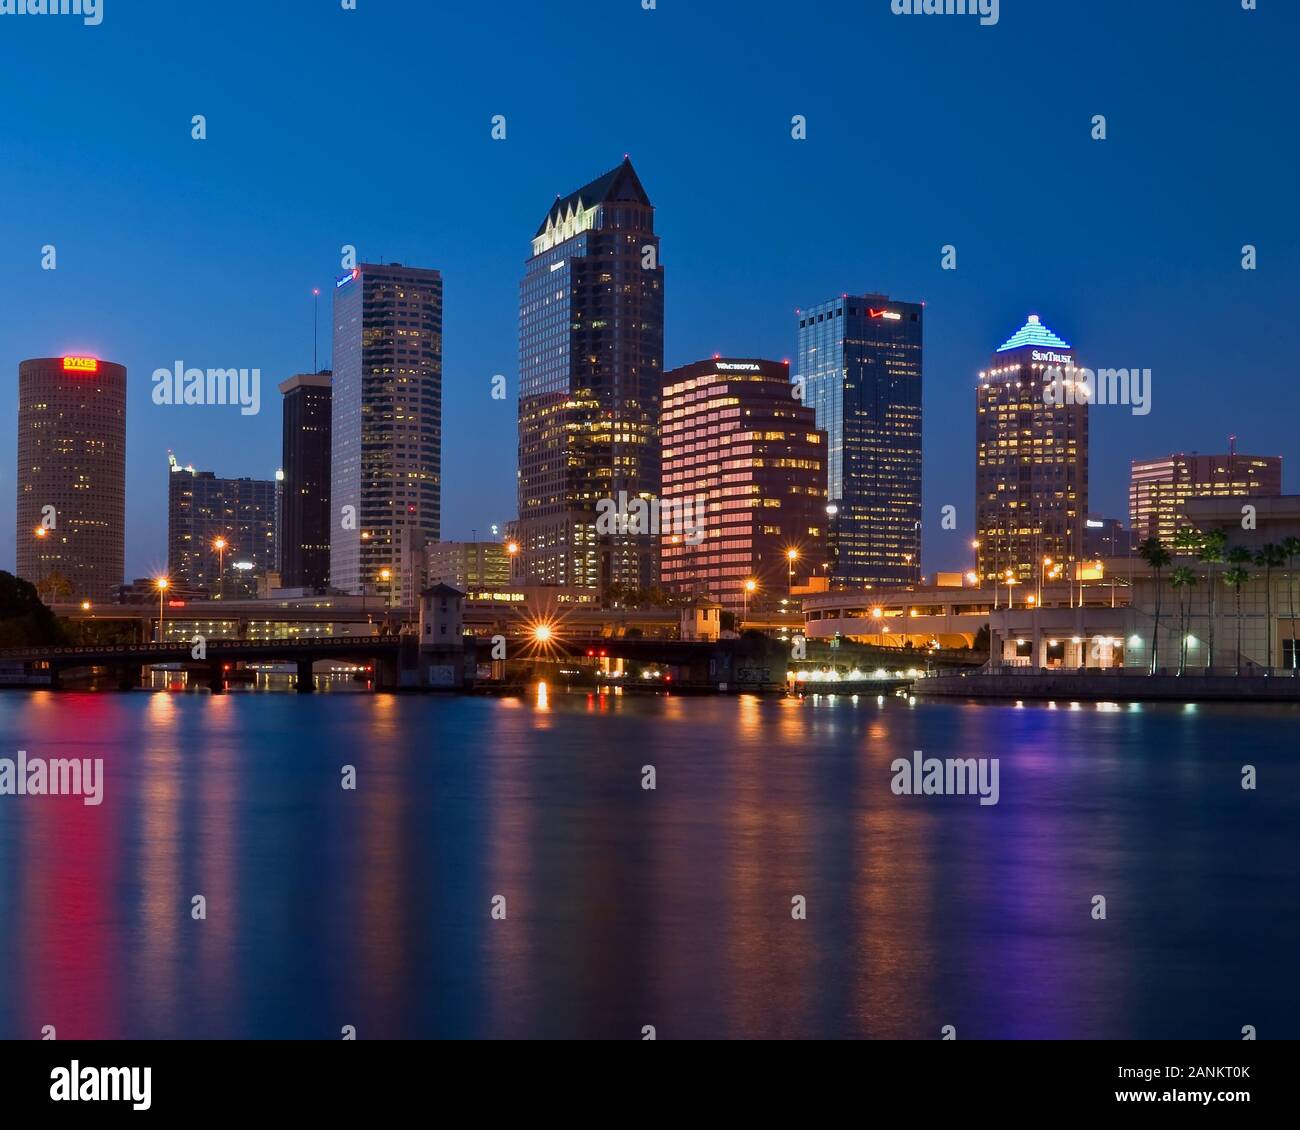 Skyline del centro de Tampa al otro lado del río Por La Noche Foto de stock